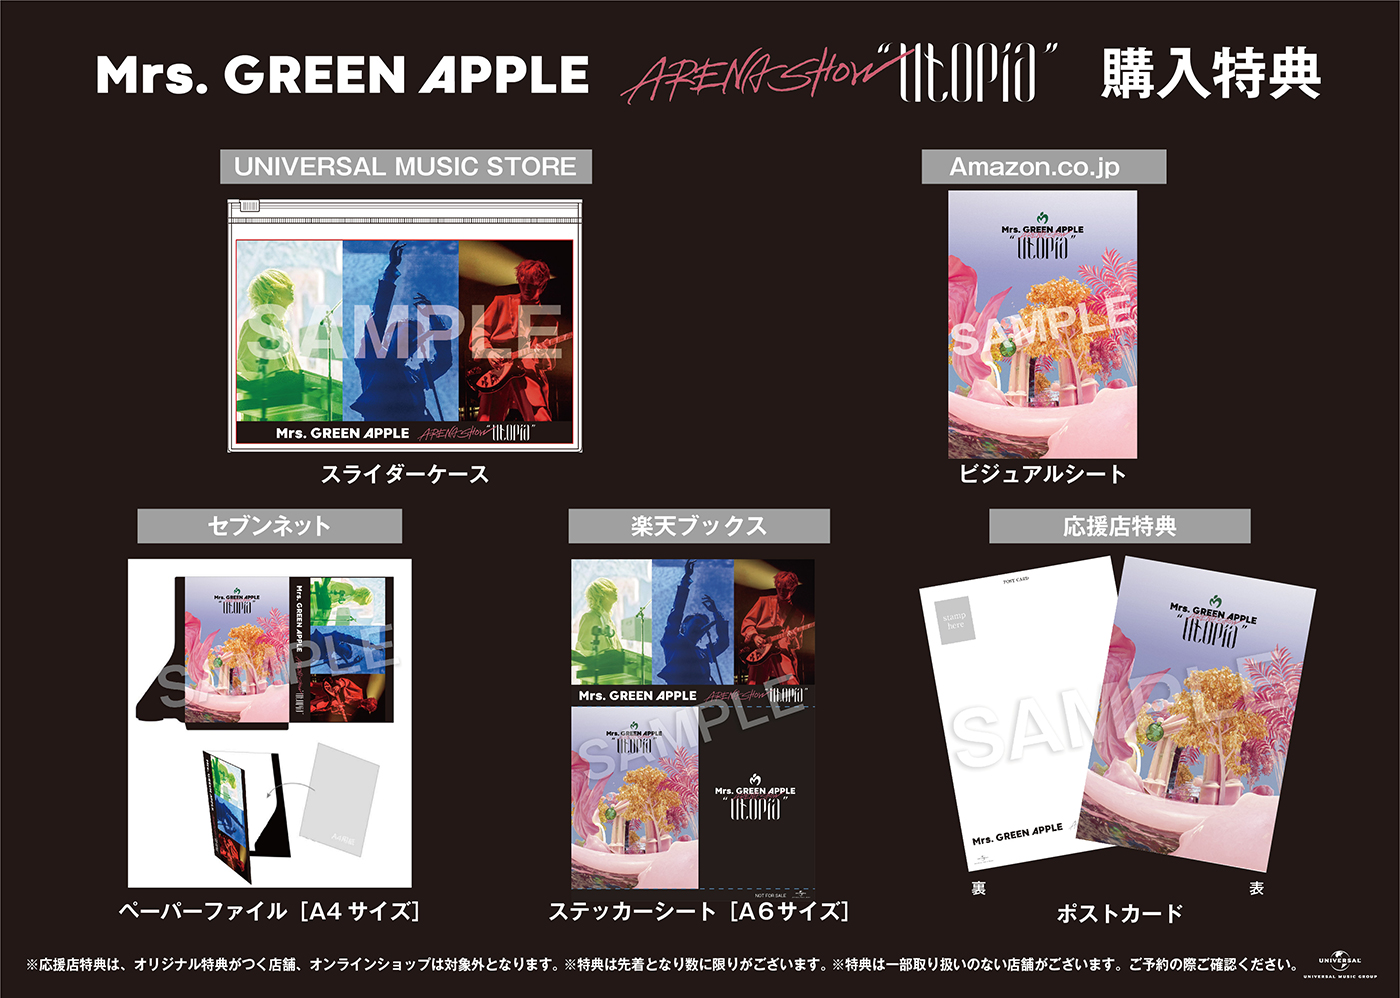 Mrs. GREEN APPLE、ライブBD＆DVD『ARENA SHOW “Utopia”』のチェーン別オリジナル特典の詳細＆デザイン公開